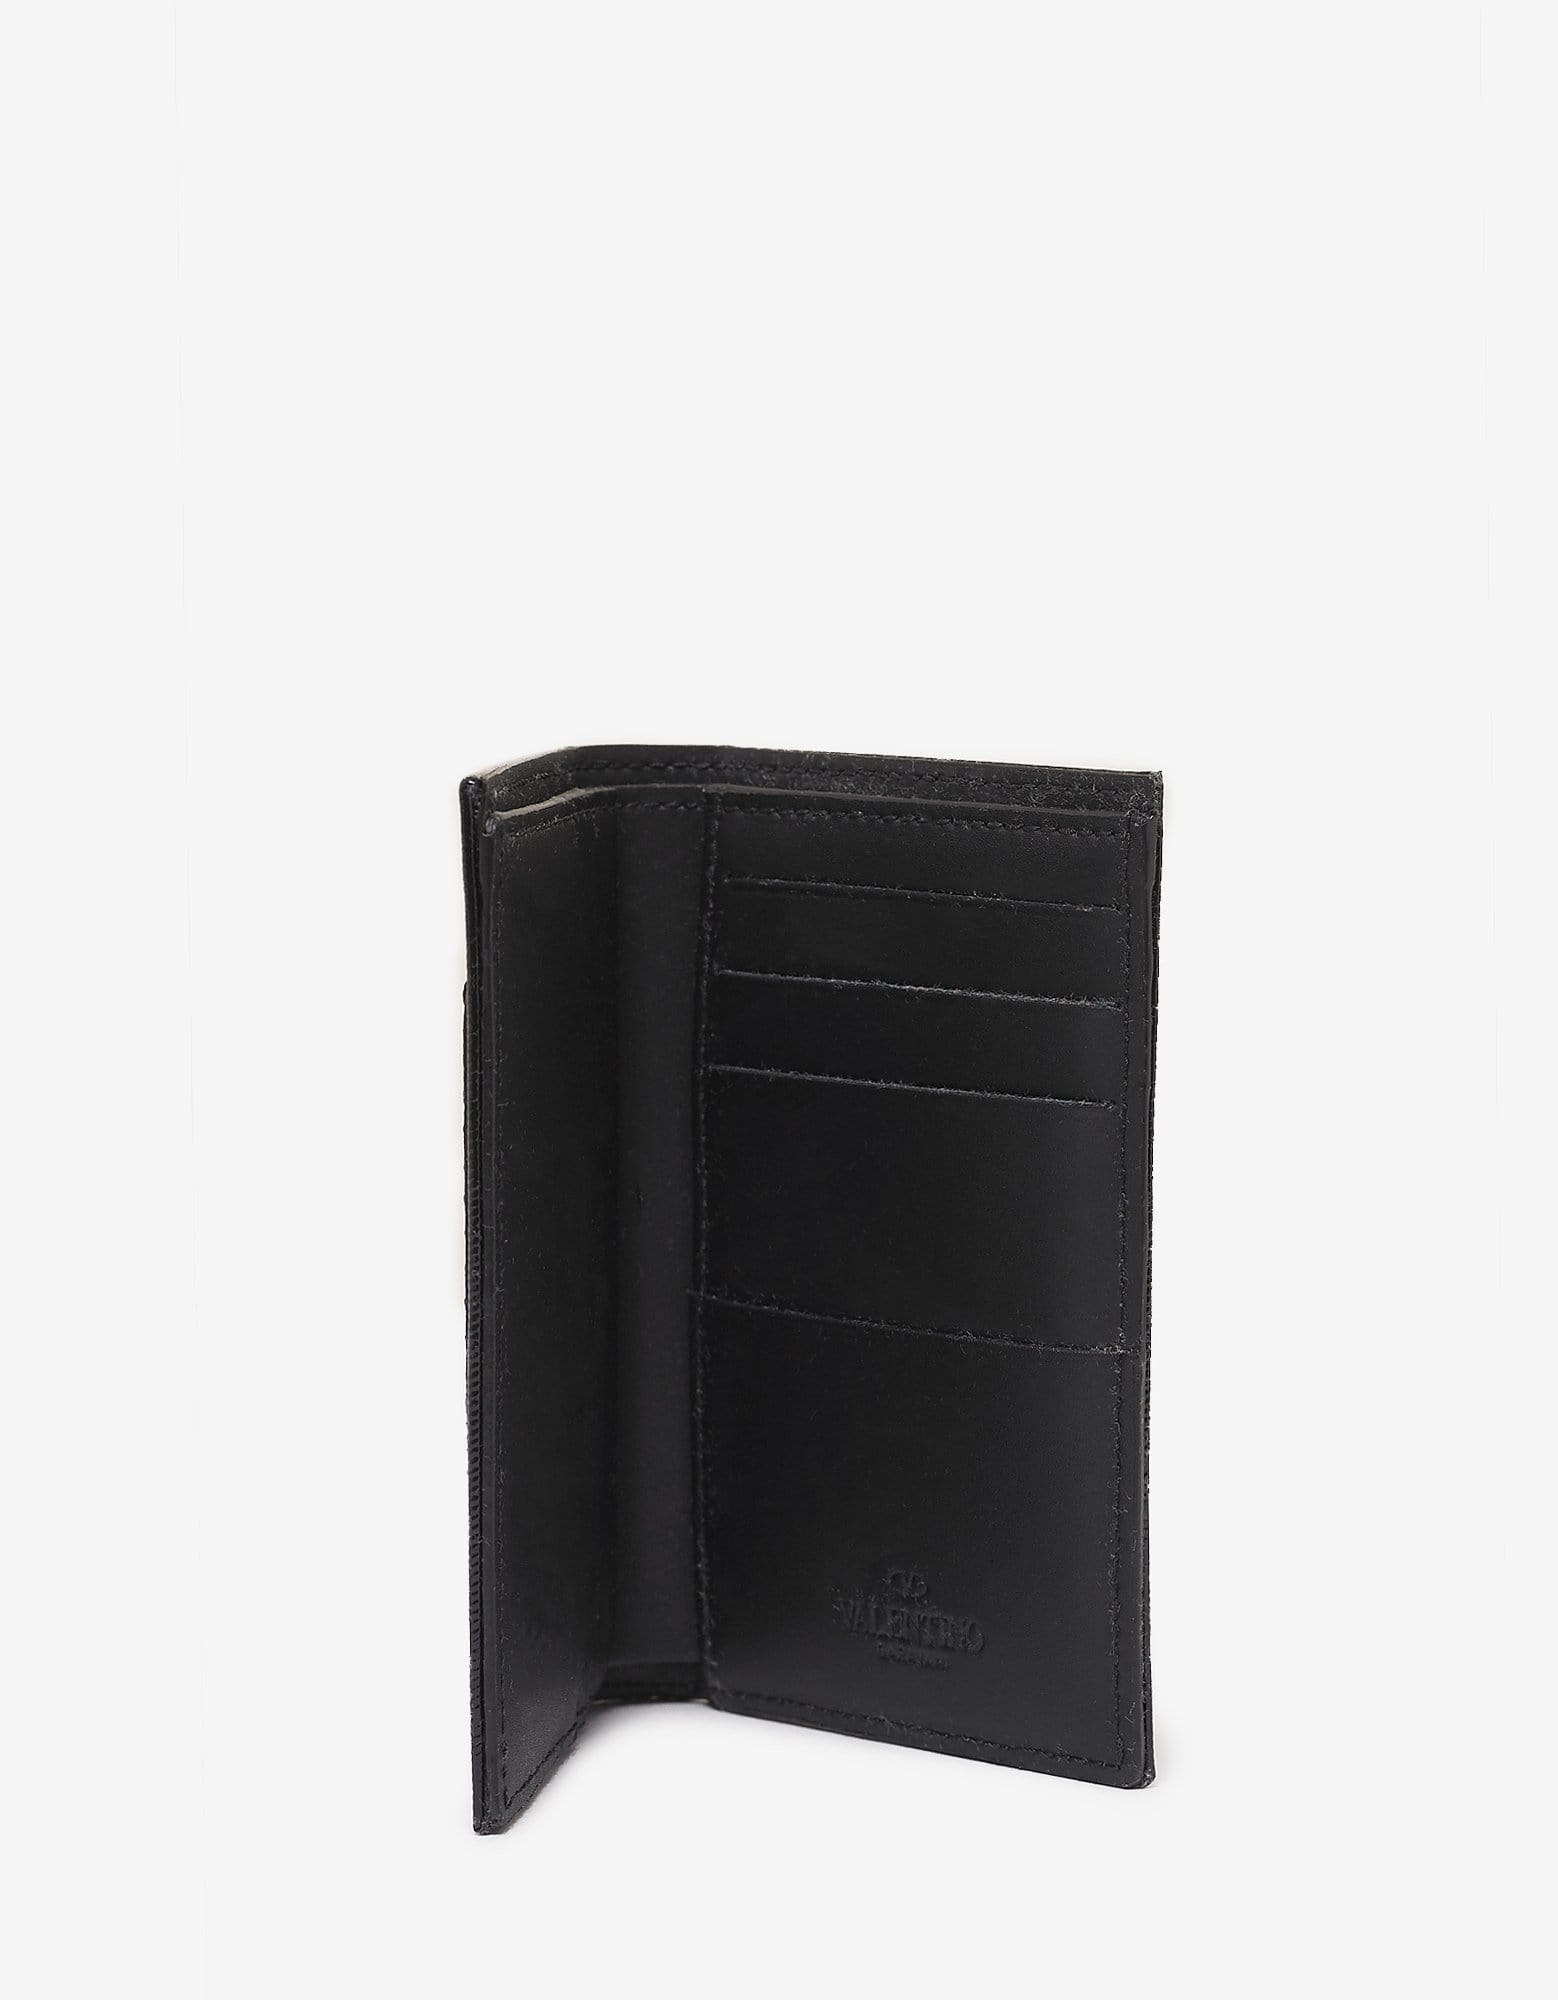 Black Patent Leather VLTN Card Wallet - 4